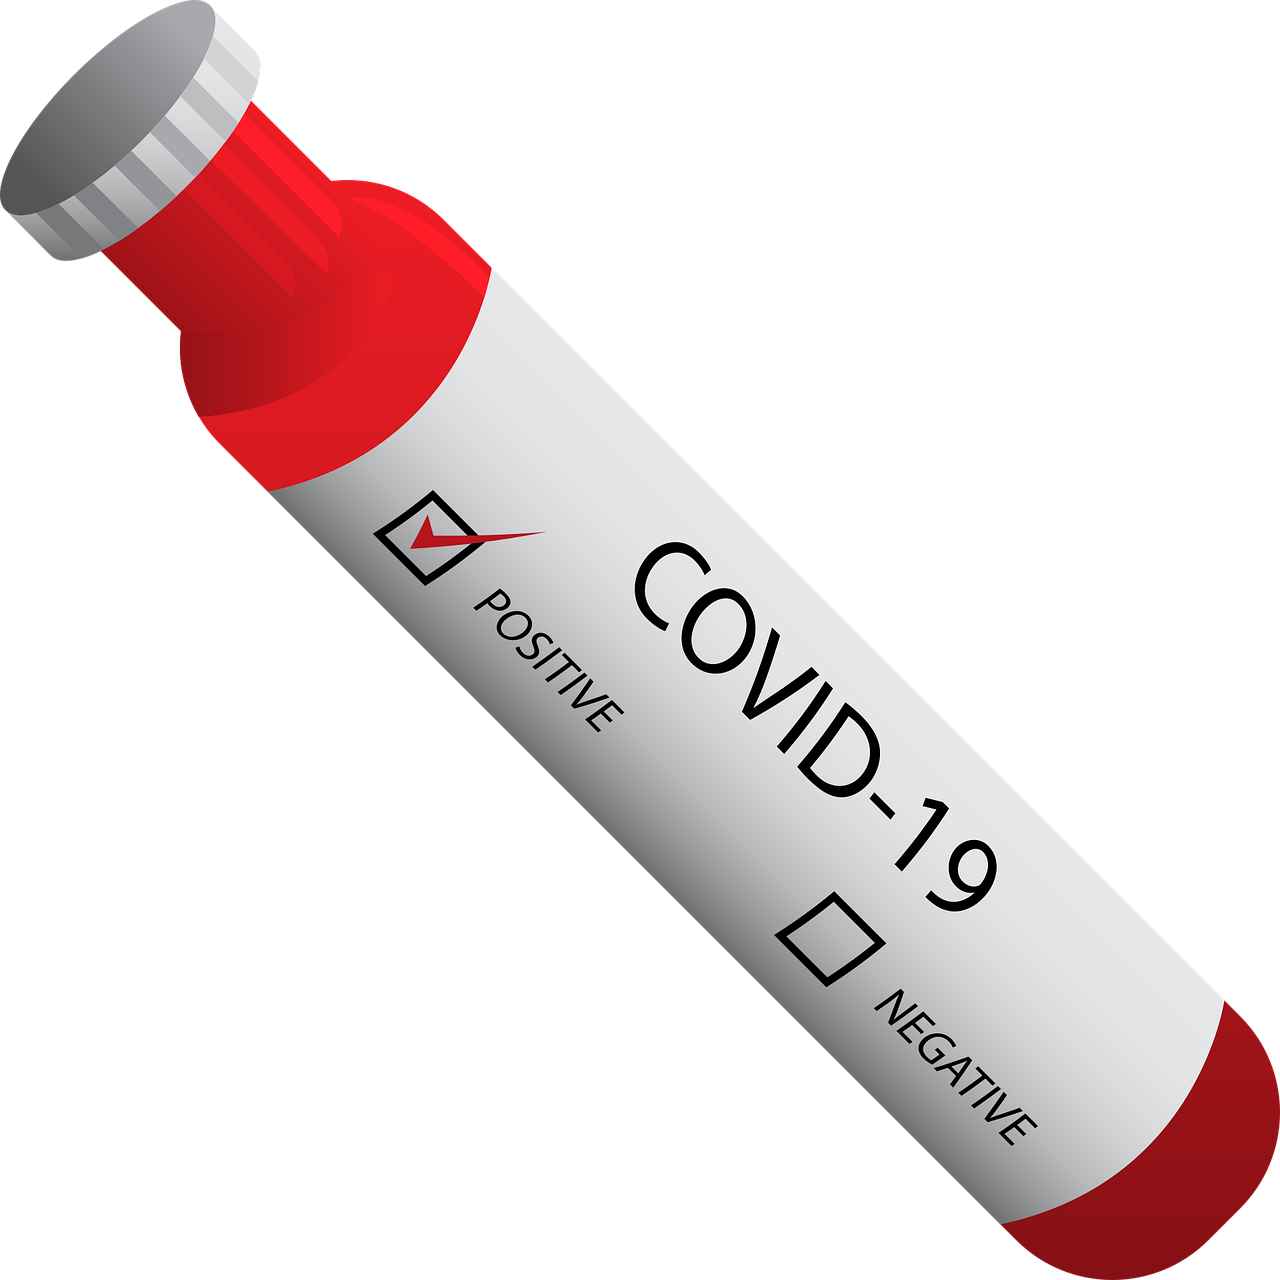 Comisia Europeană, recomandare privind testele antigenice pentru COVID-19